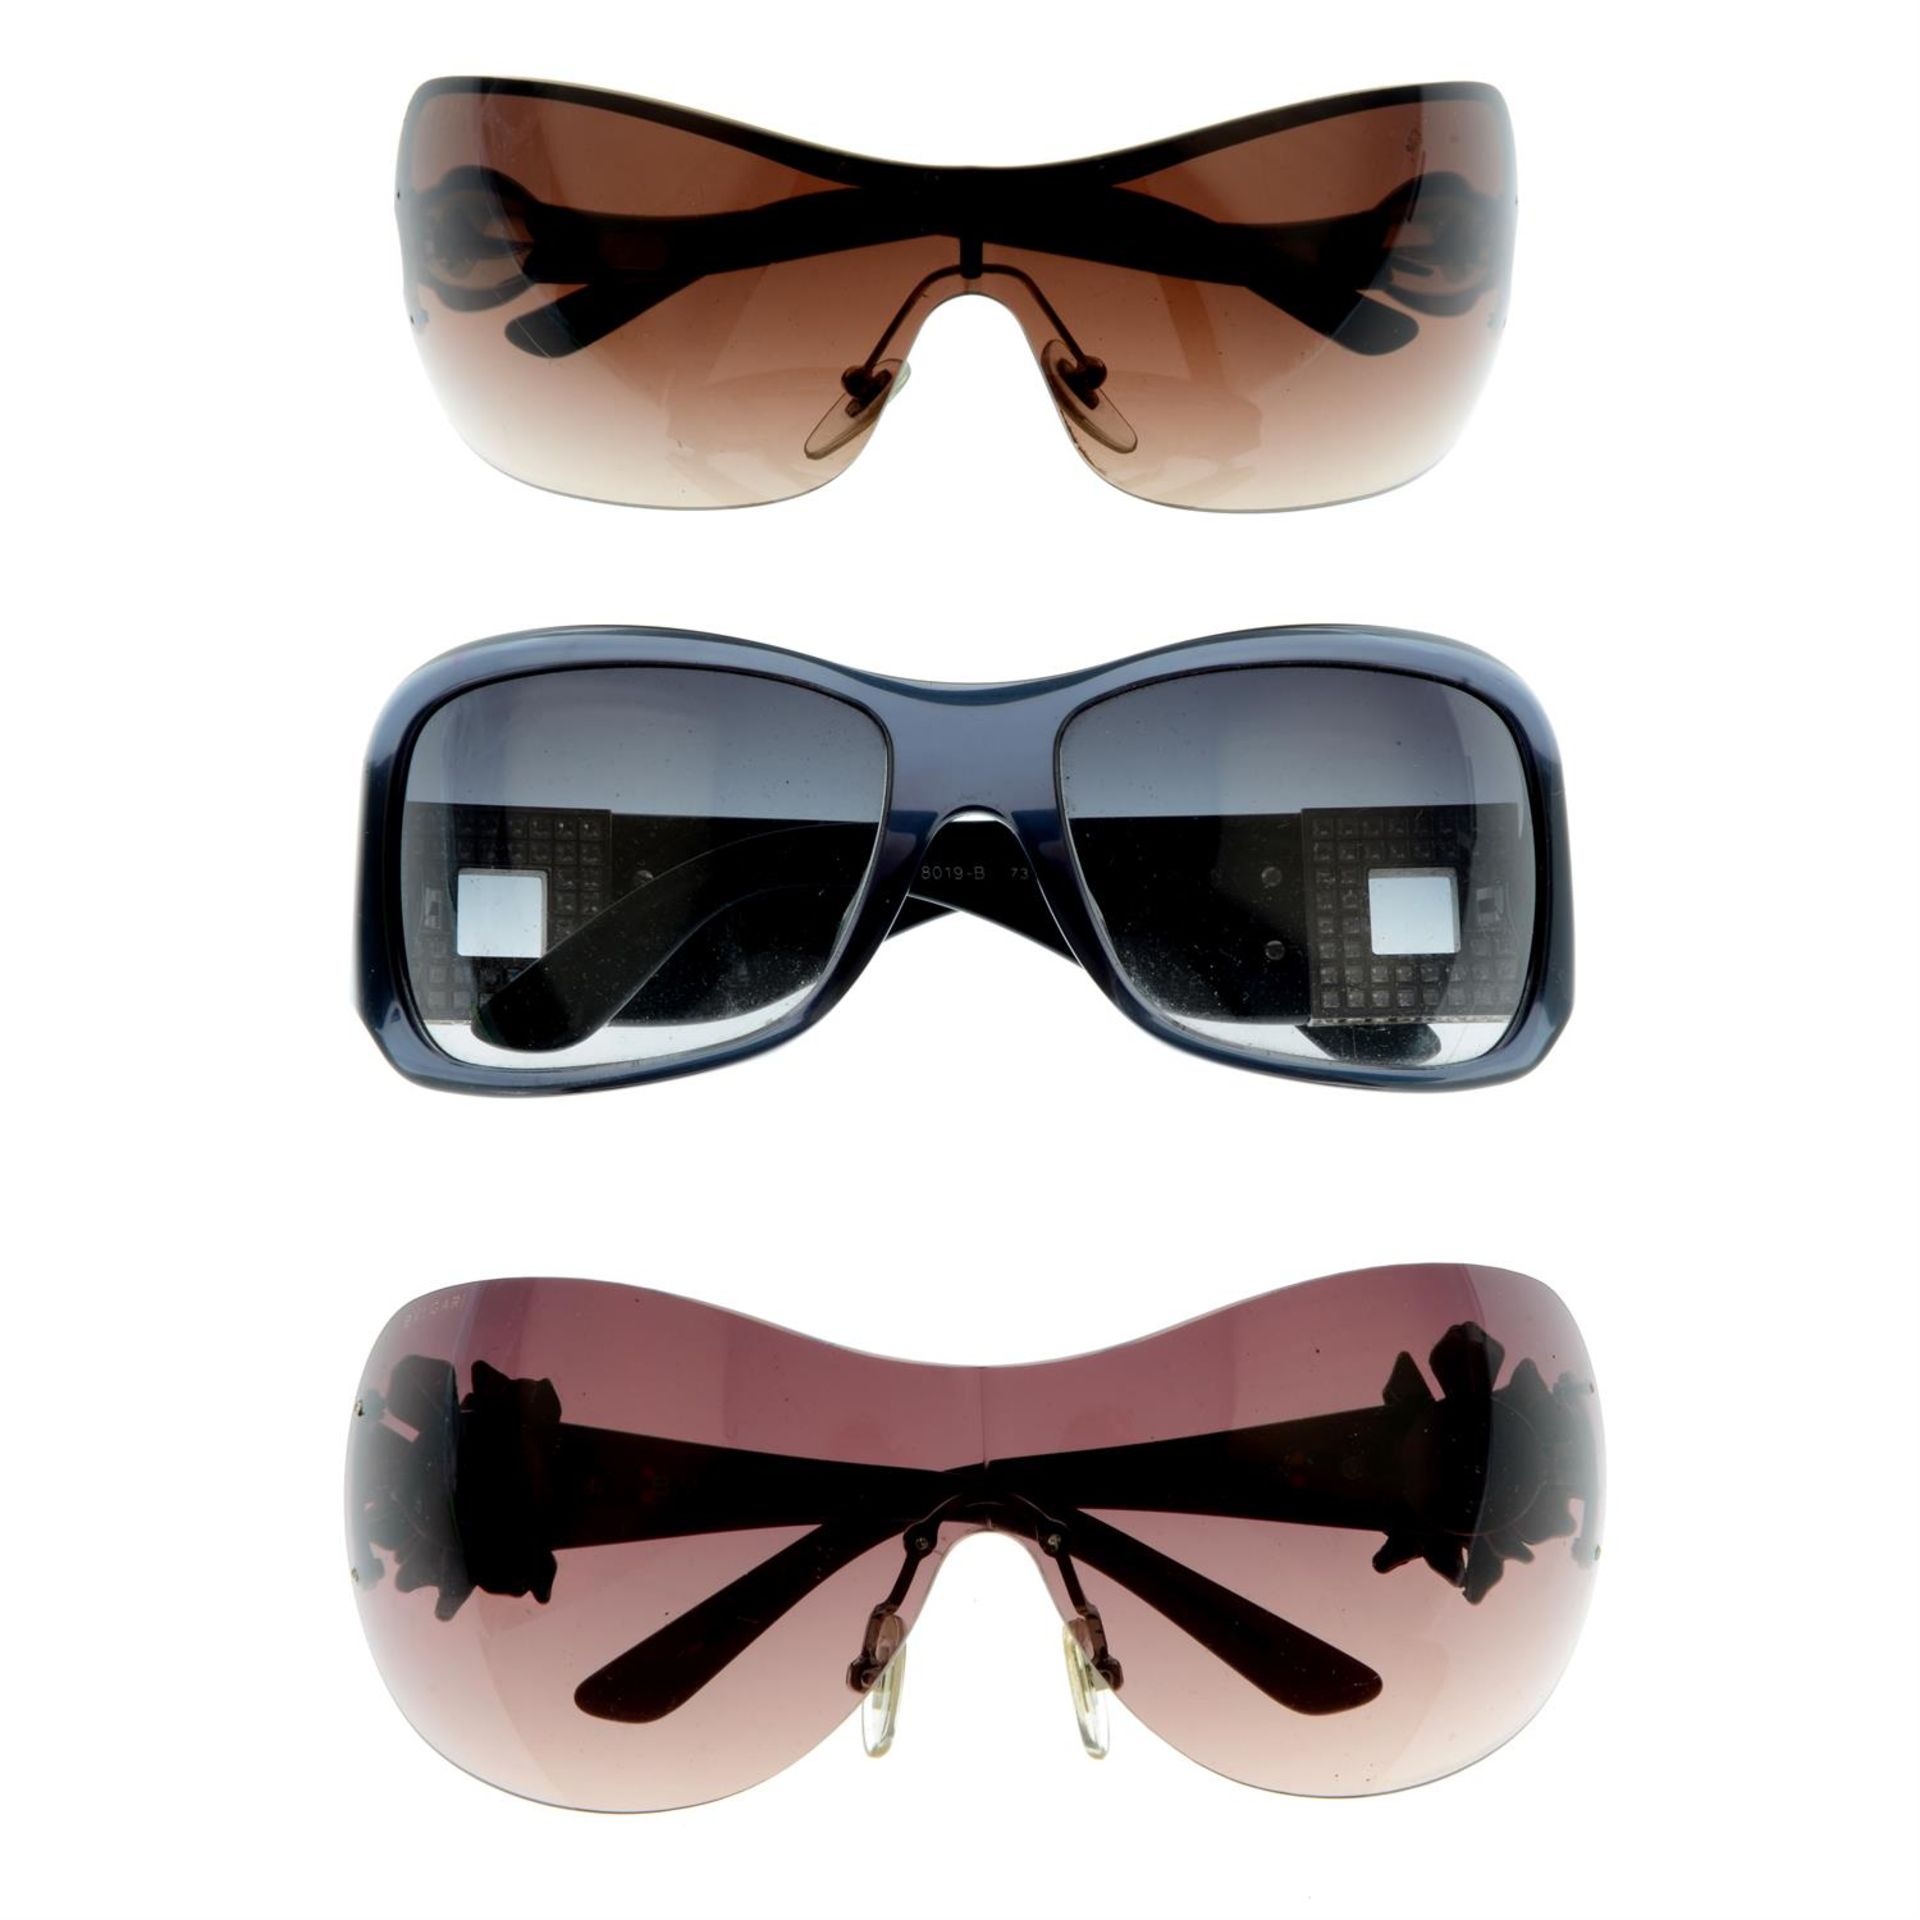 BULGARI - three pairs of sunglasses.